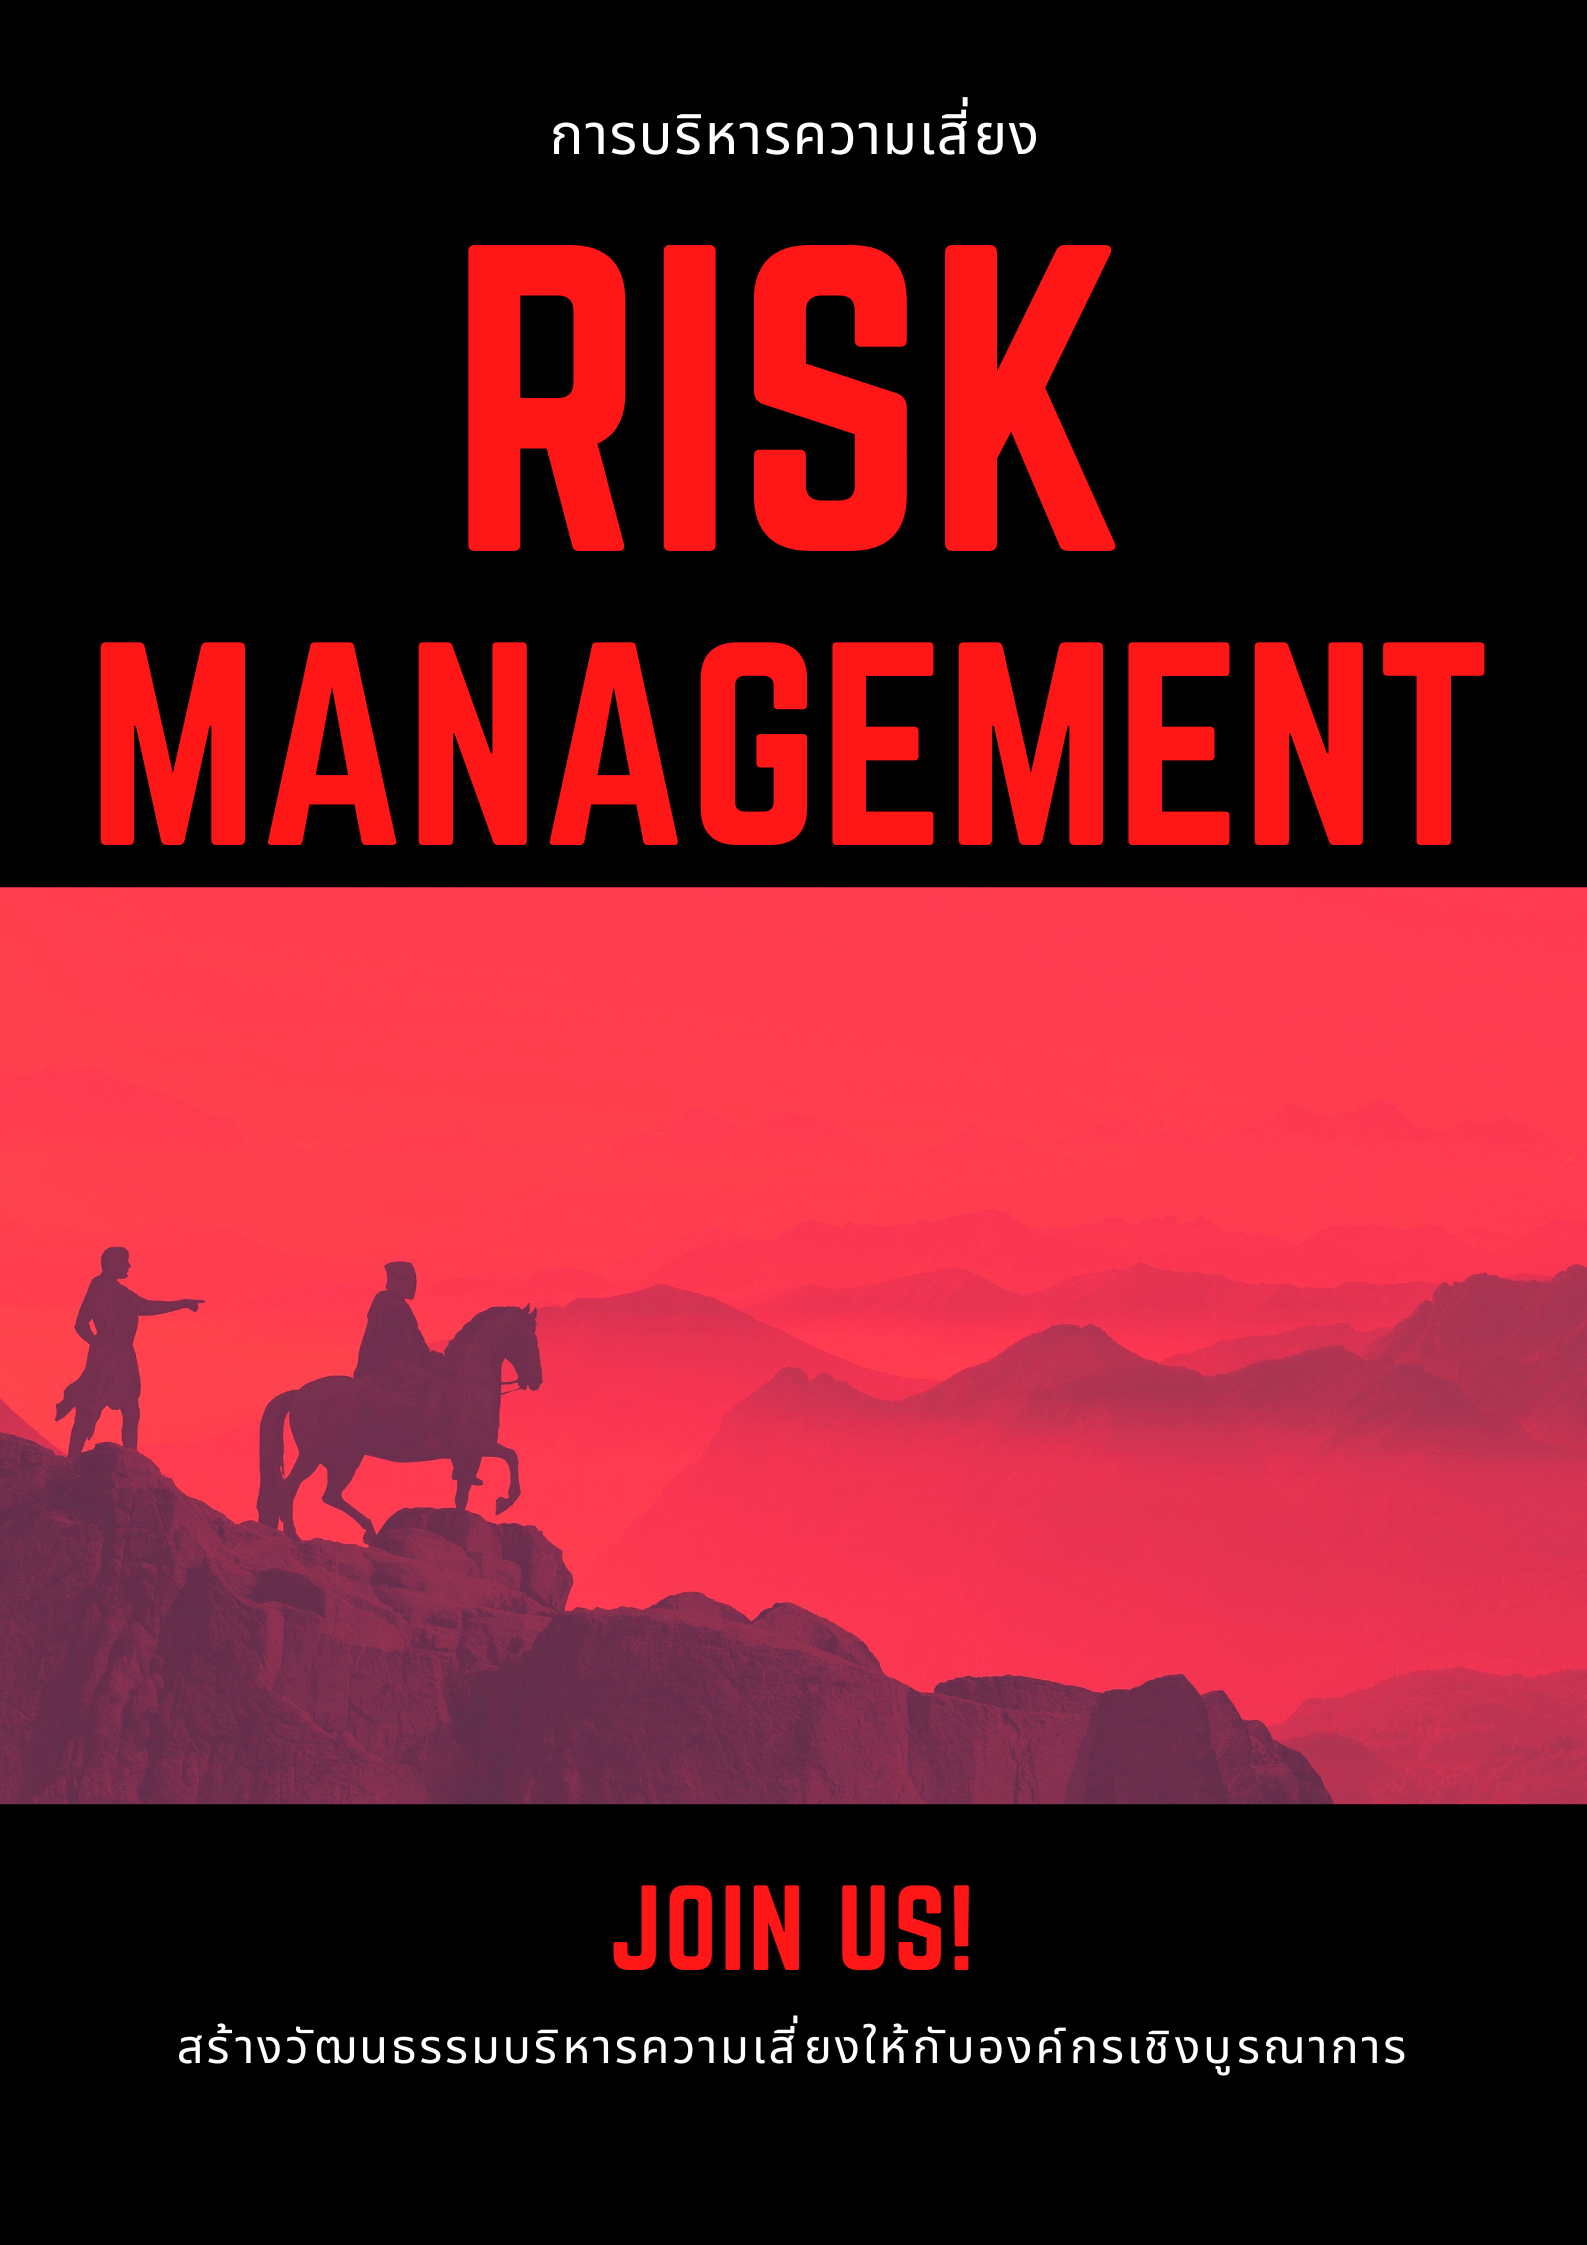 หลักสูตรอบรม หลักสูตร การจัดการความเสี่ยง (Risk Management)